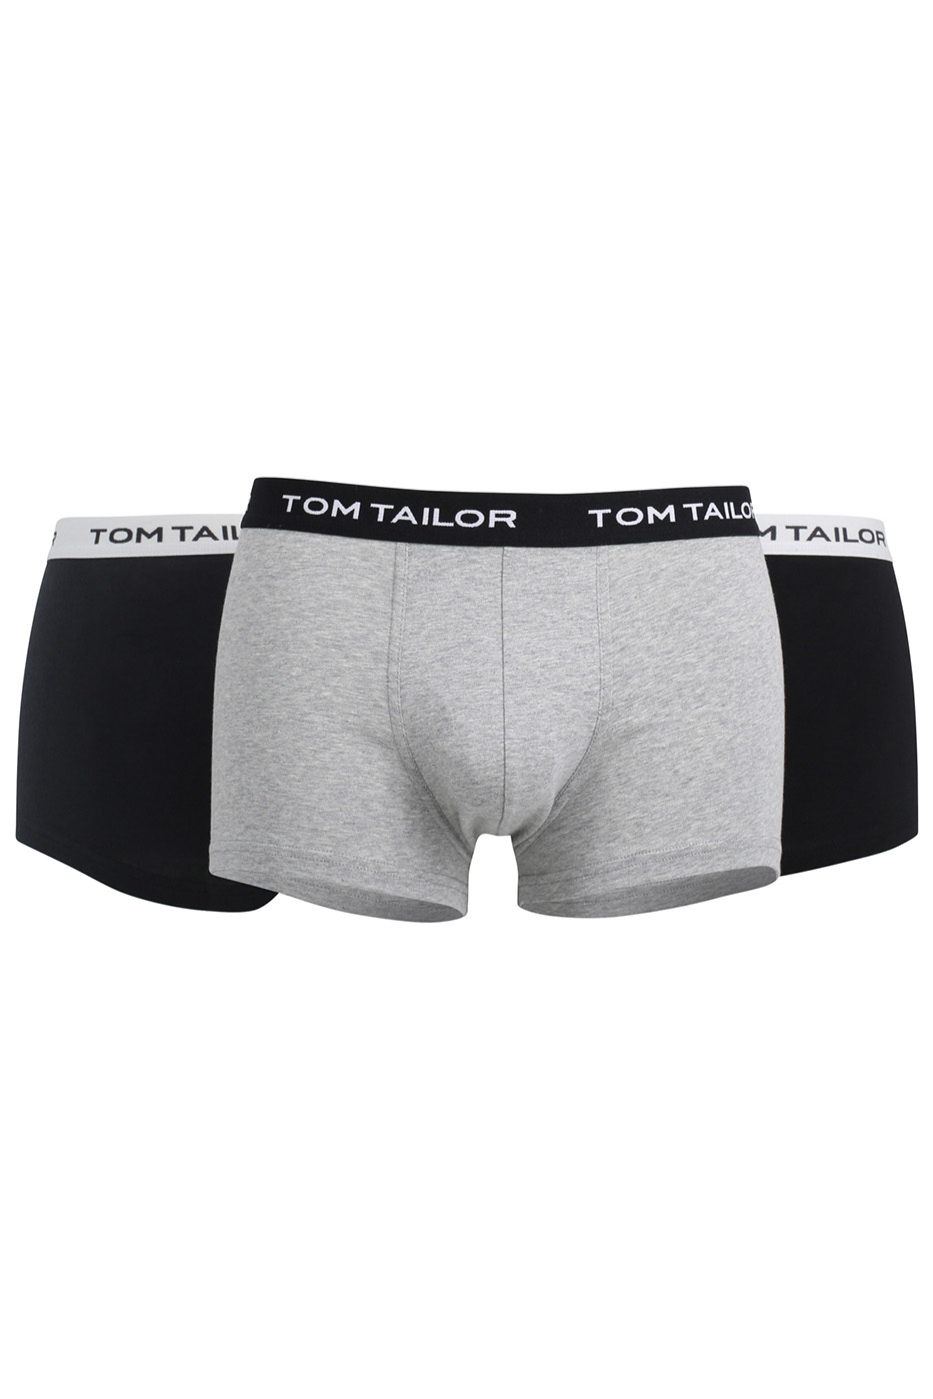 Boxershorts TOM TAILOR 70162-6061-9300